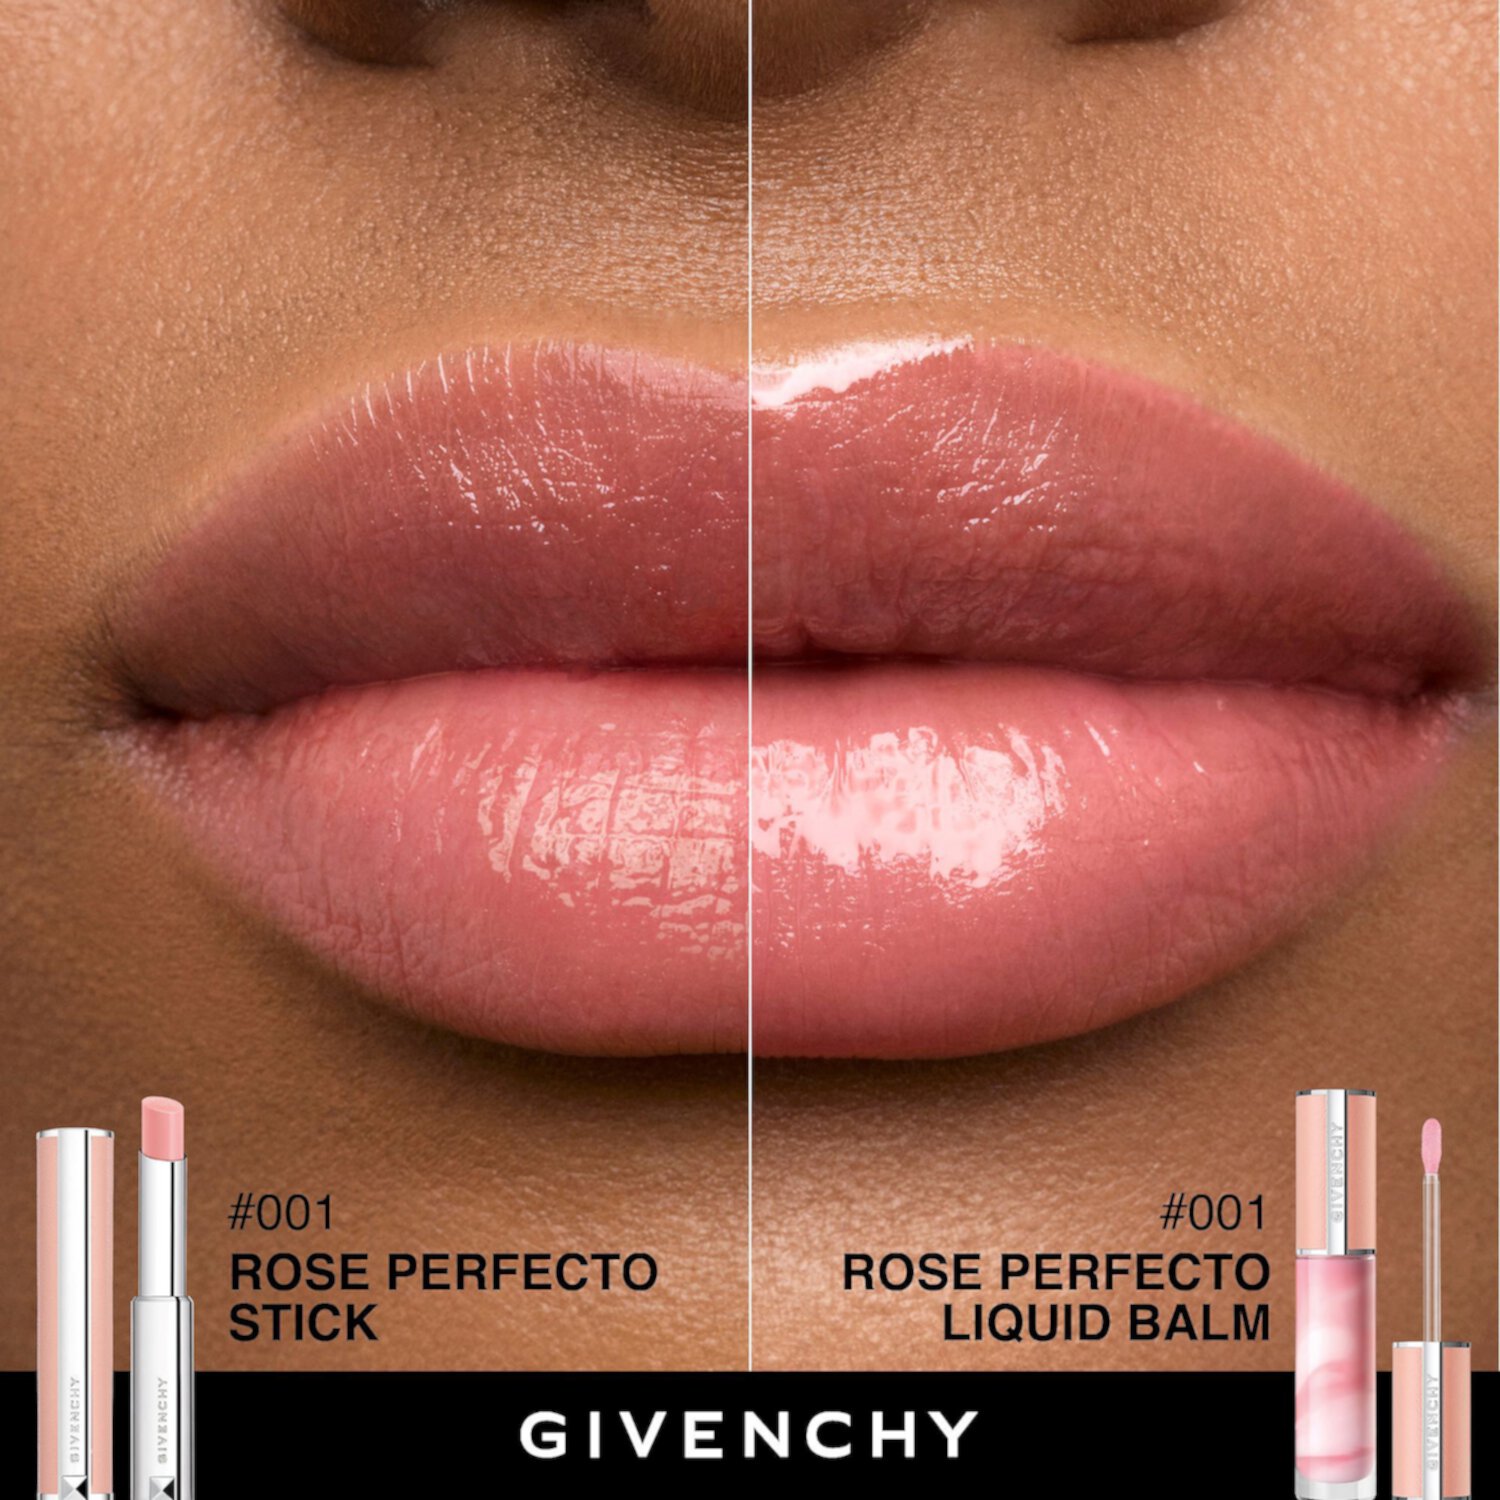 Rose Perfecto Увлажняющий бальзам и блеск для губ Givenchy